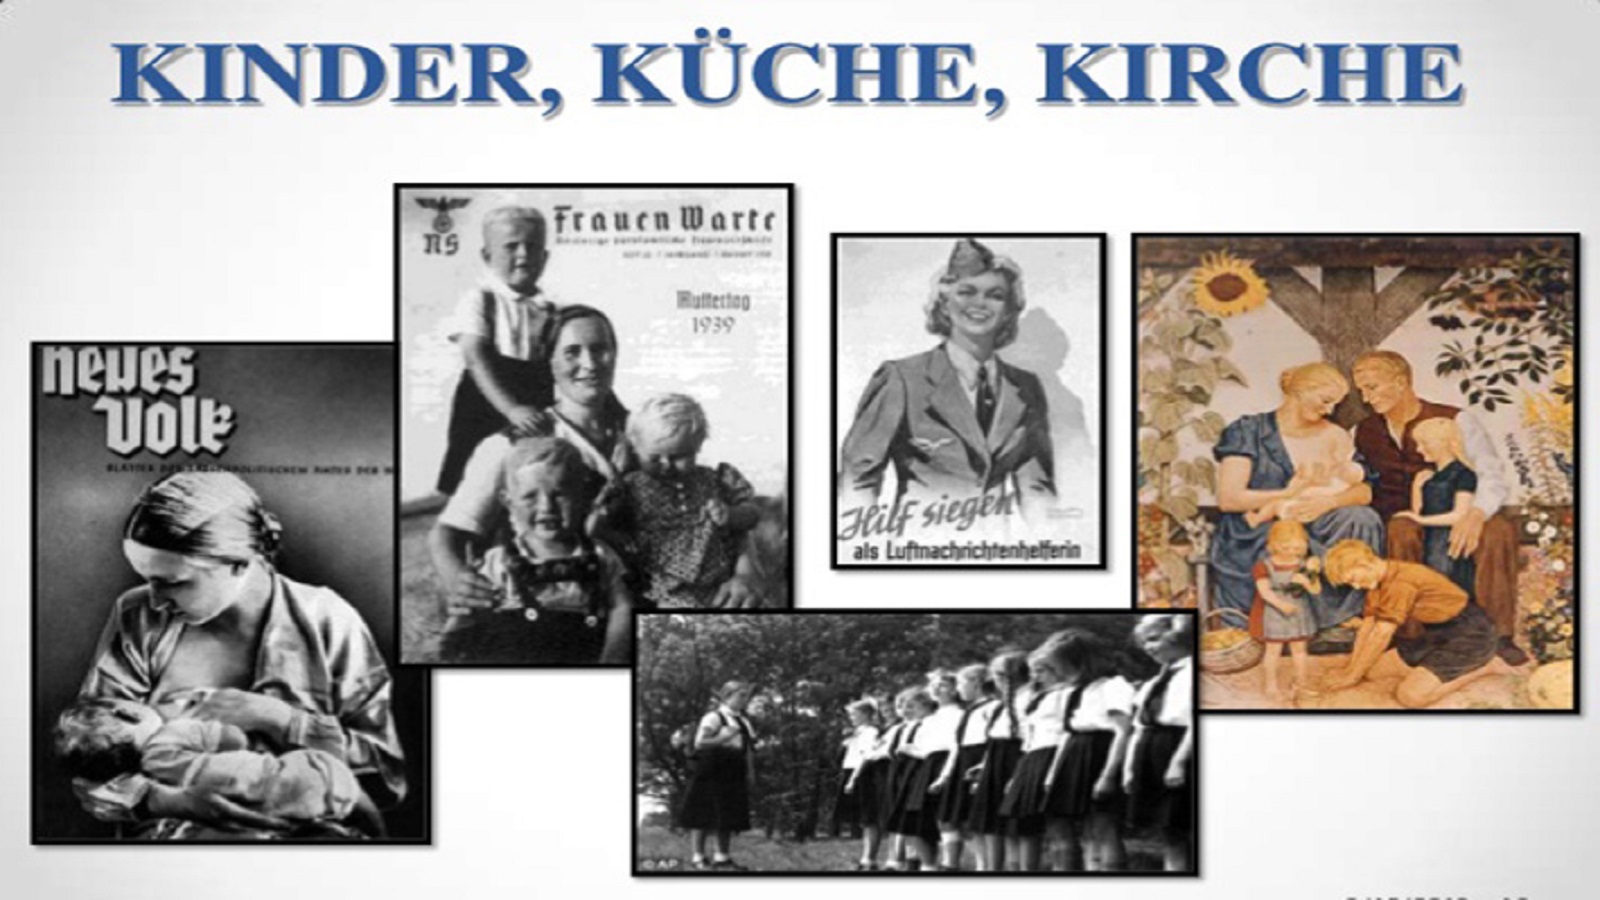 الشعار الألماني التقليدي: "كيرش، كوش، كوندر"، أي "كنيسة، مطبخ، أطفال".